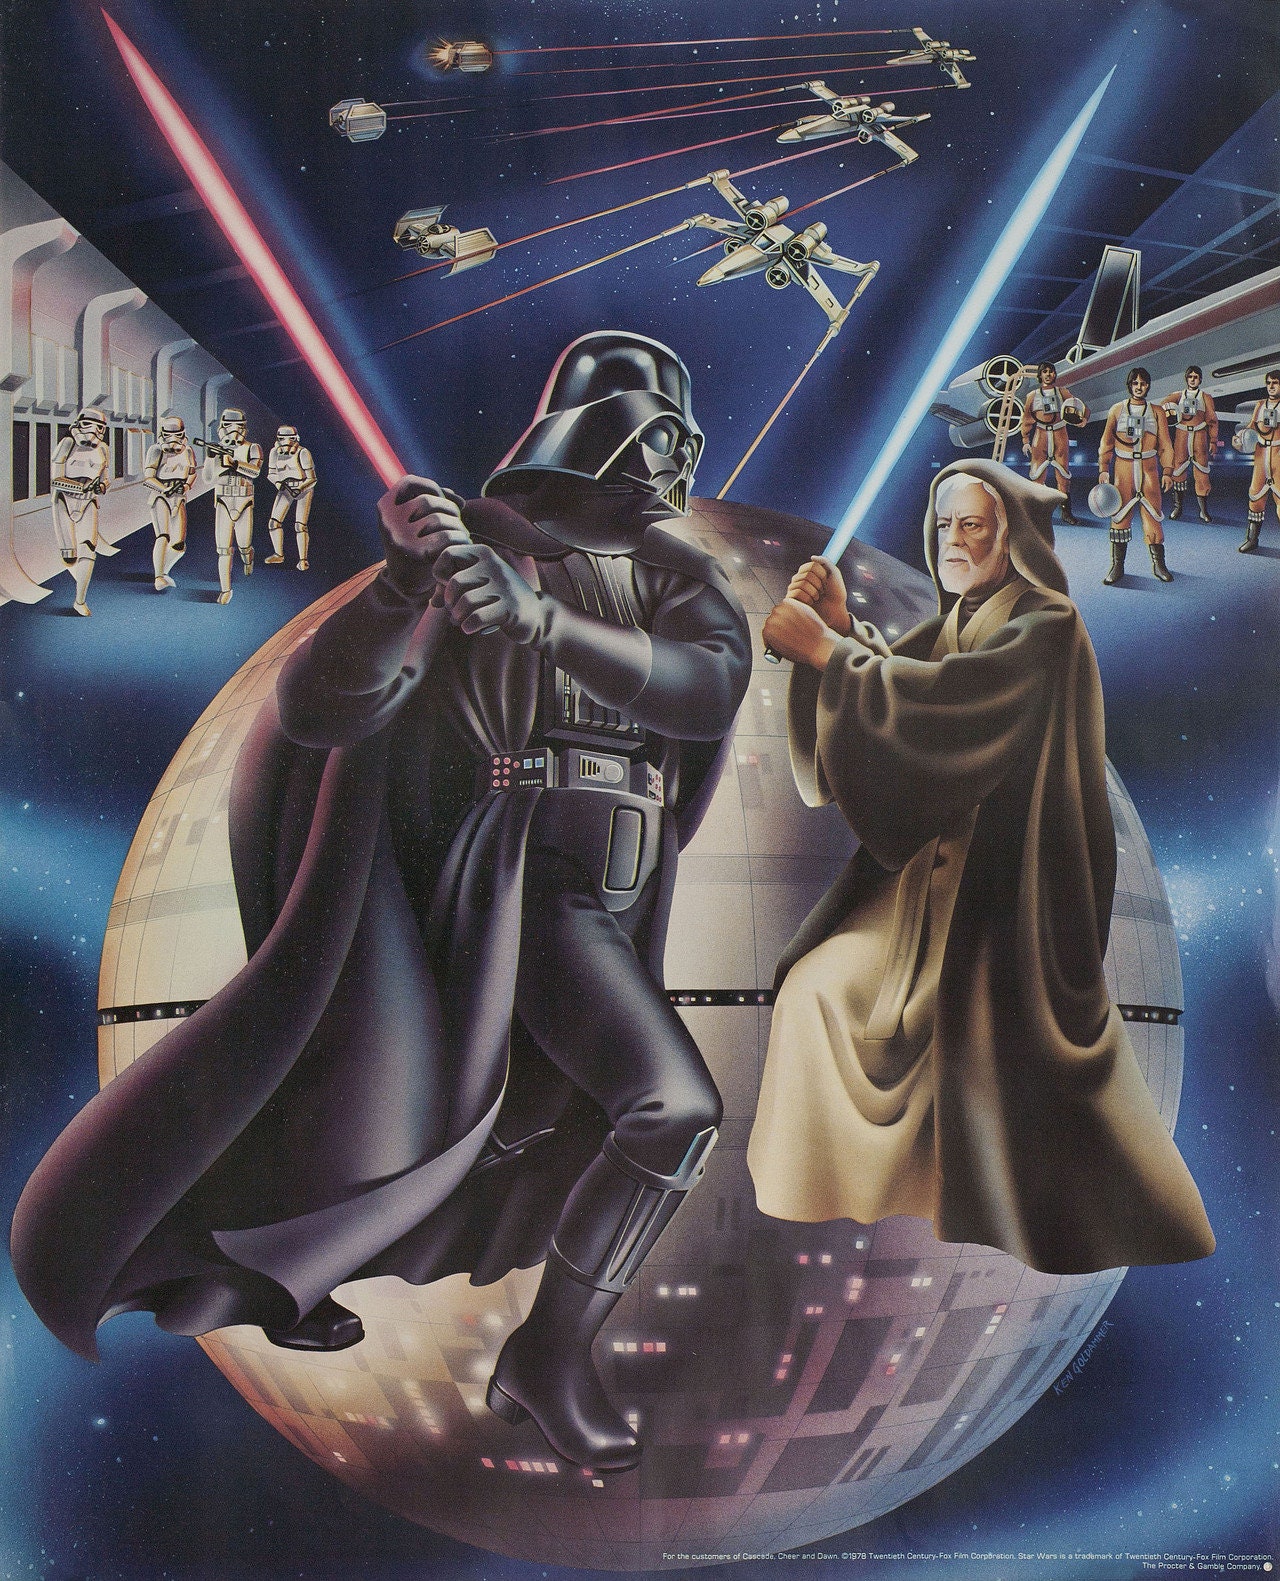 Hvordan imod Diligence Star Wars 1977 U.S. Poster - Etsy 日本